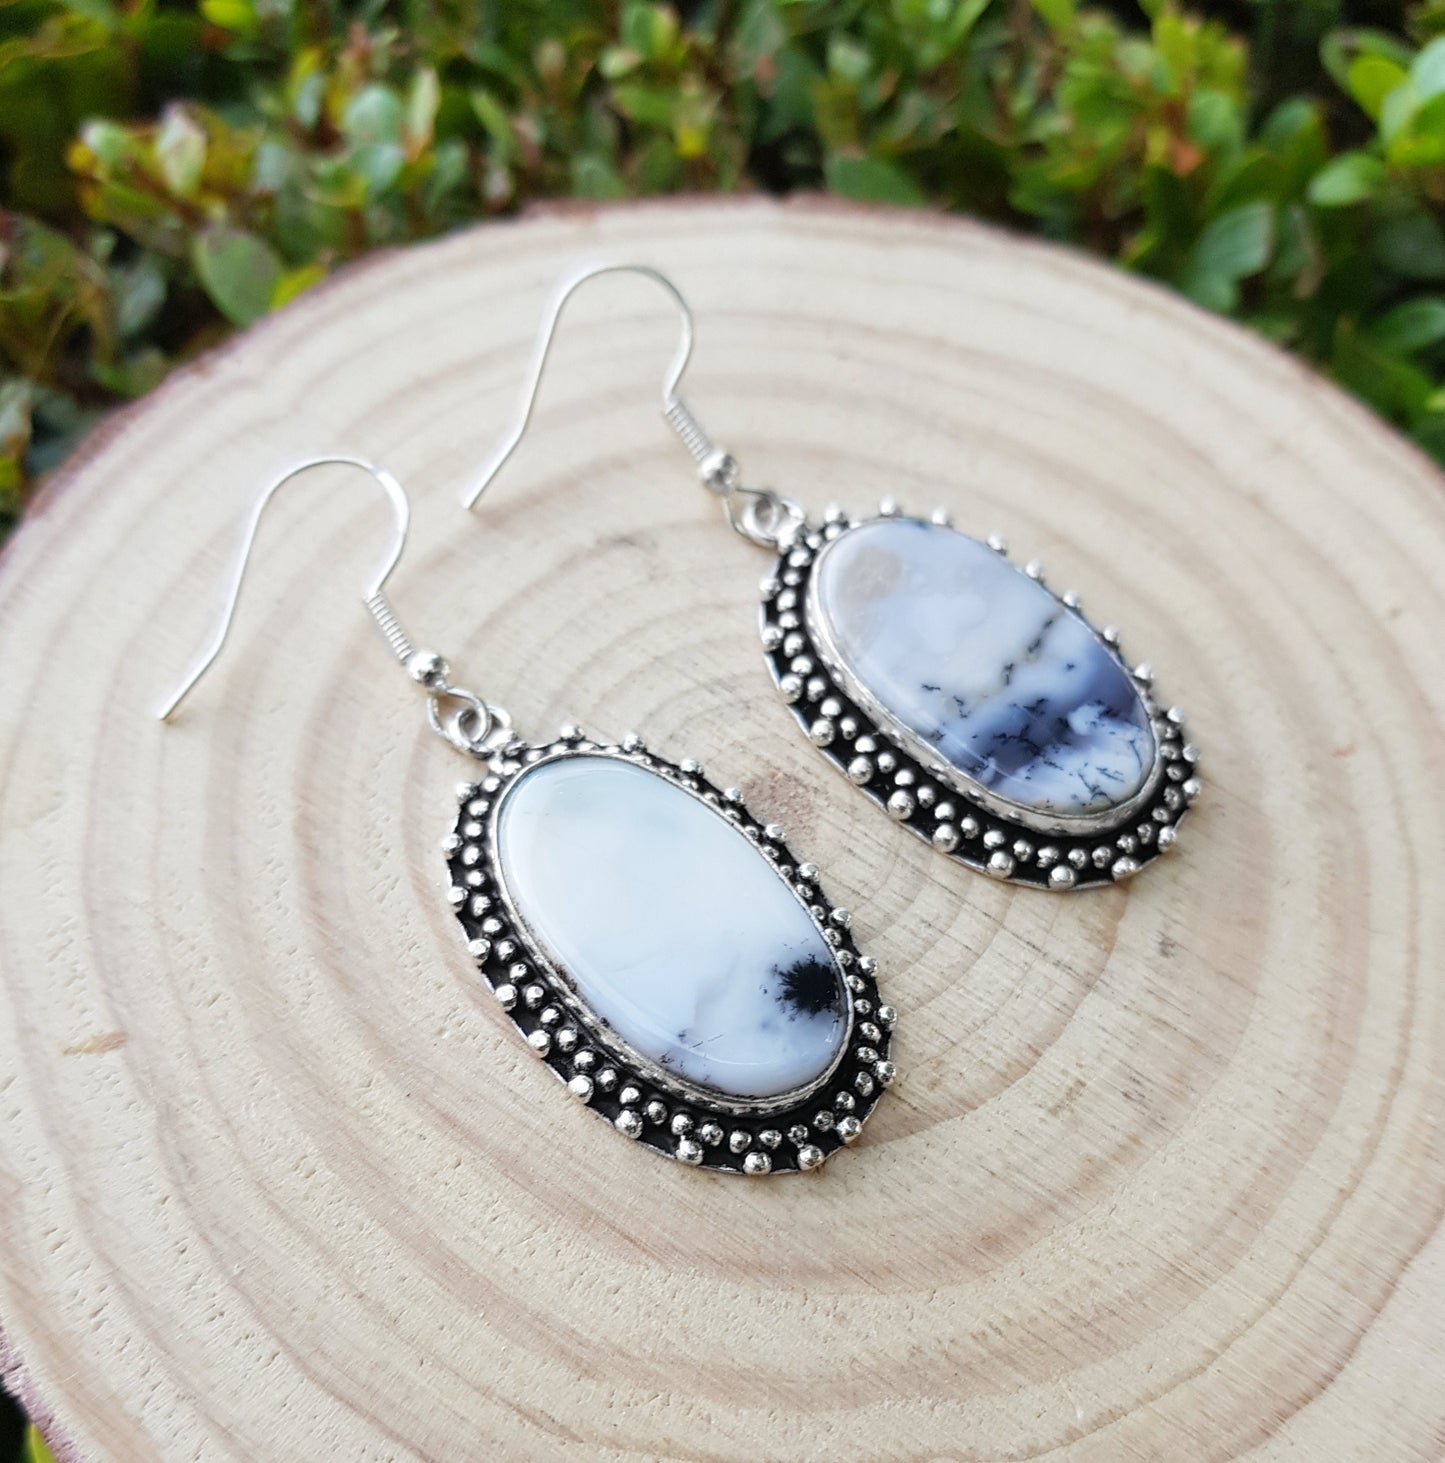 Dendrite Opal Earrings In Sterling Silver Boho Earrings Dangle Earrings GypsyJewelry Unique Gift For Women